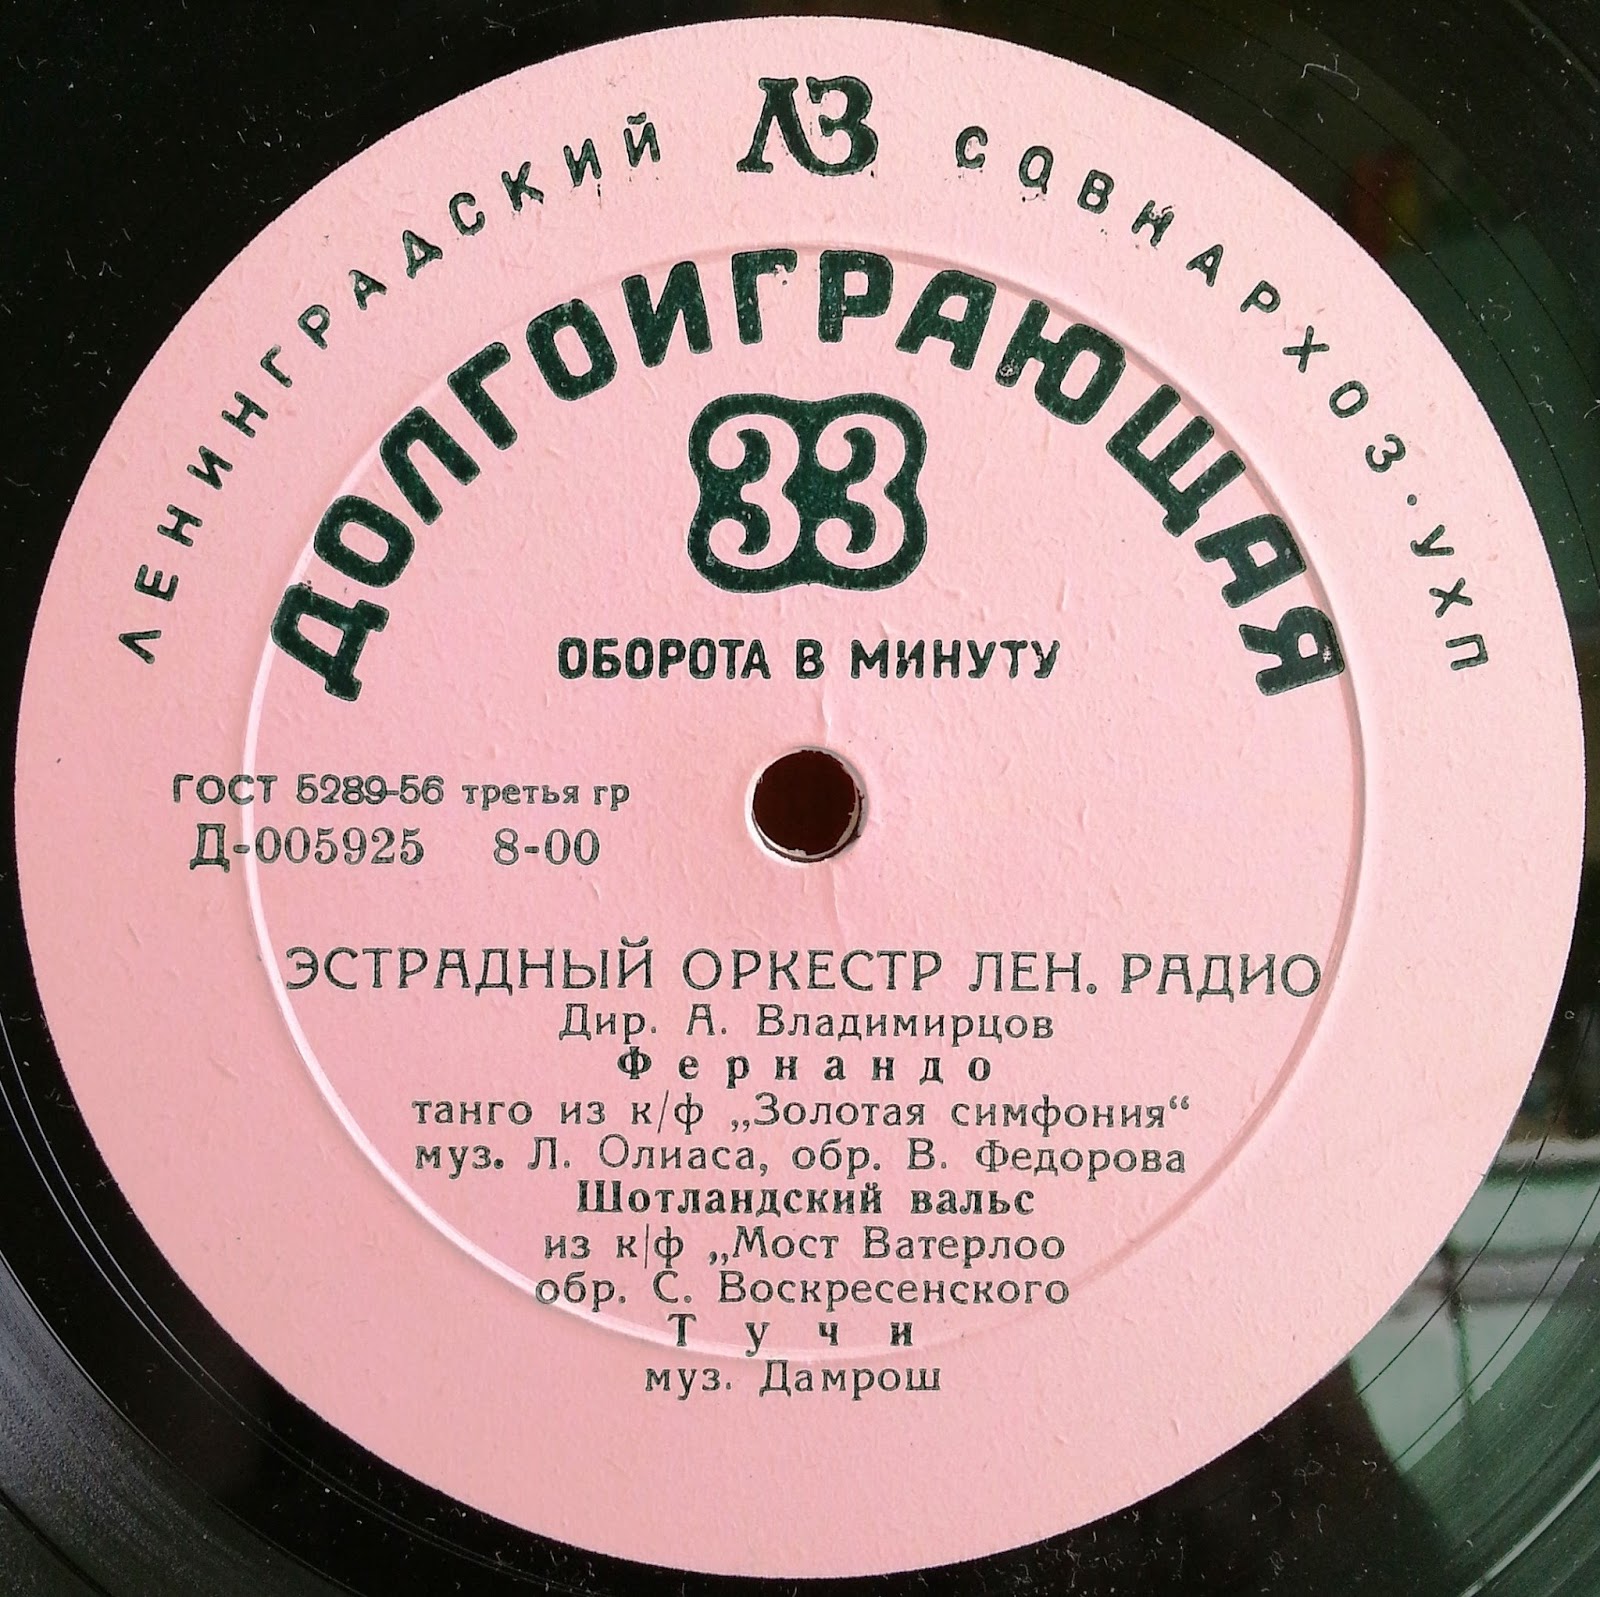 Эстрадный оркестр Лен. радио, дир. А. Владимирцов